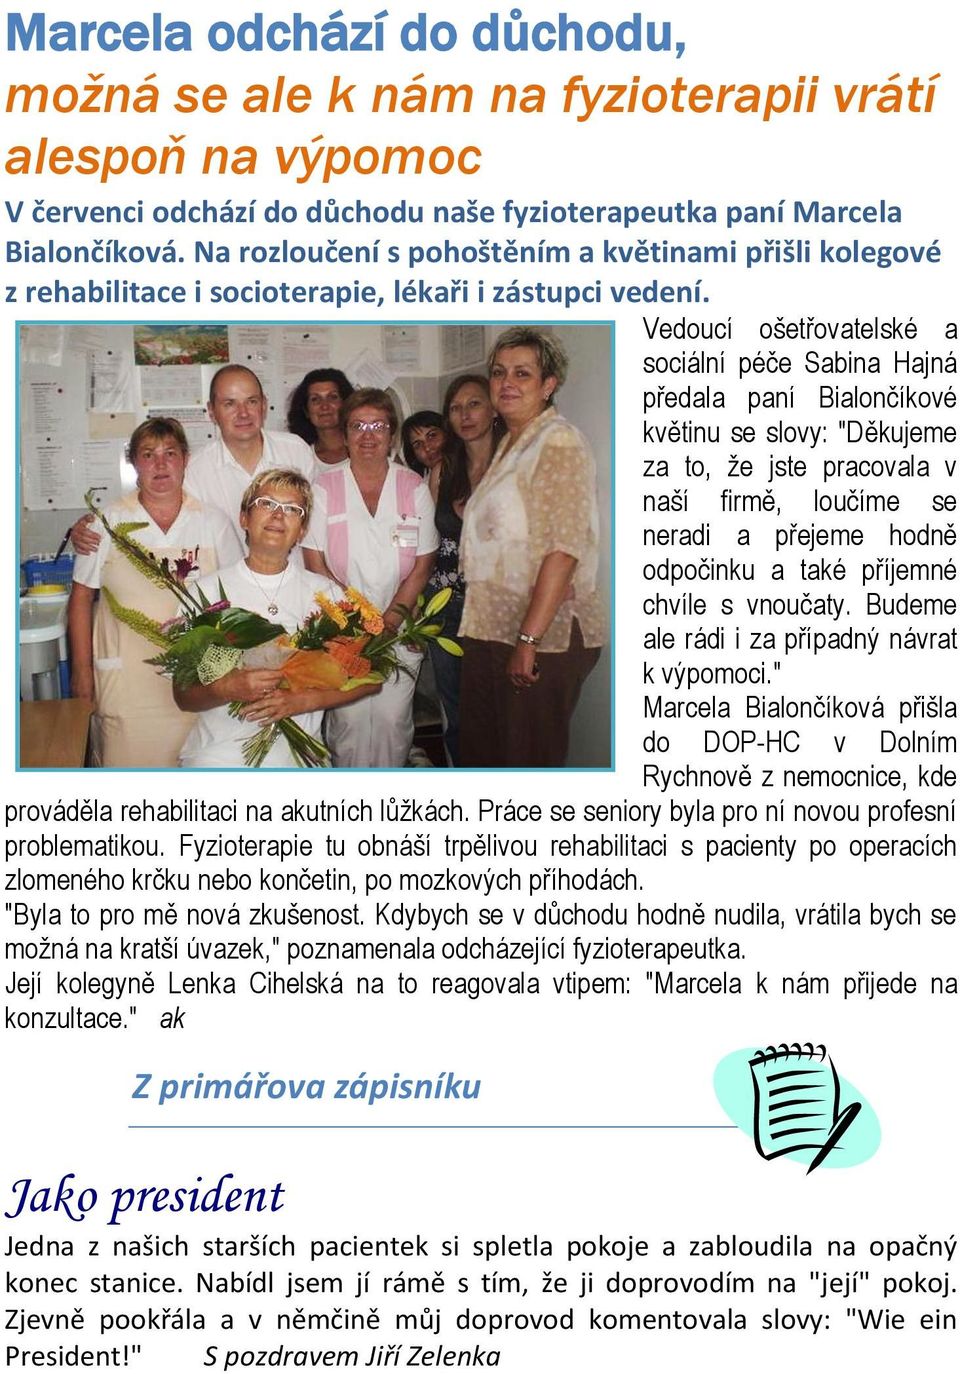 Vedoucí ošetřovatelské a sociální péče Sabina Hajná předala paní Bialončíkové květinu se slovy: "Děkujeme za to, že jste pracovala v naší firmě, loučíme se neradi a přejeme hodně odpočinku a také